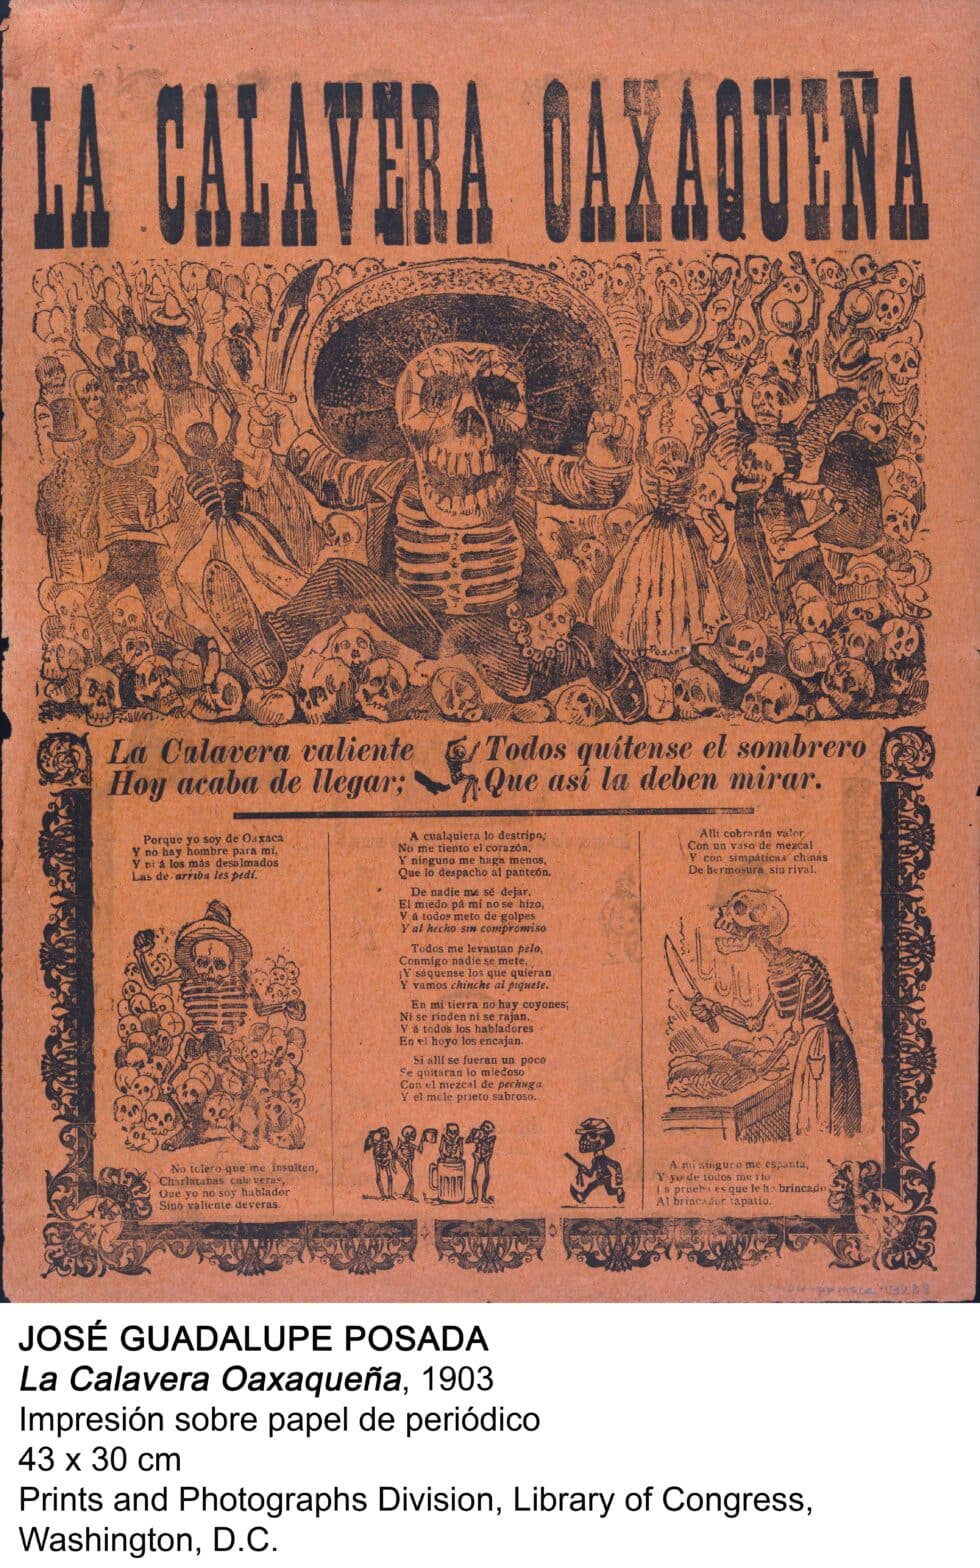 'La Calavera Oaxaqueña', José Guadalupe Posada